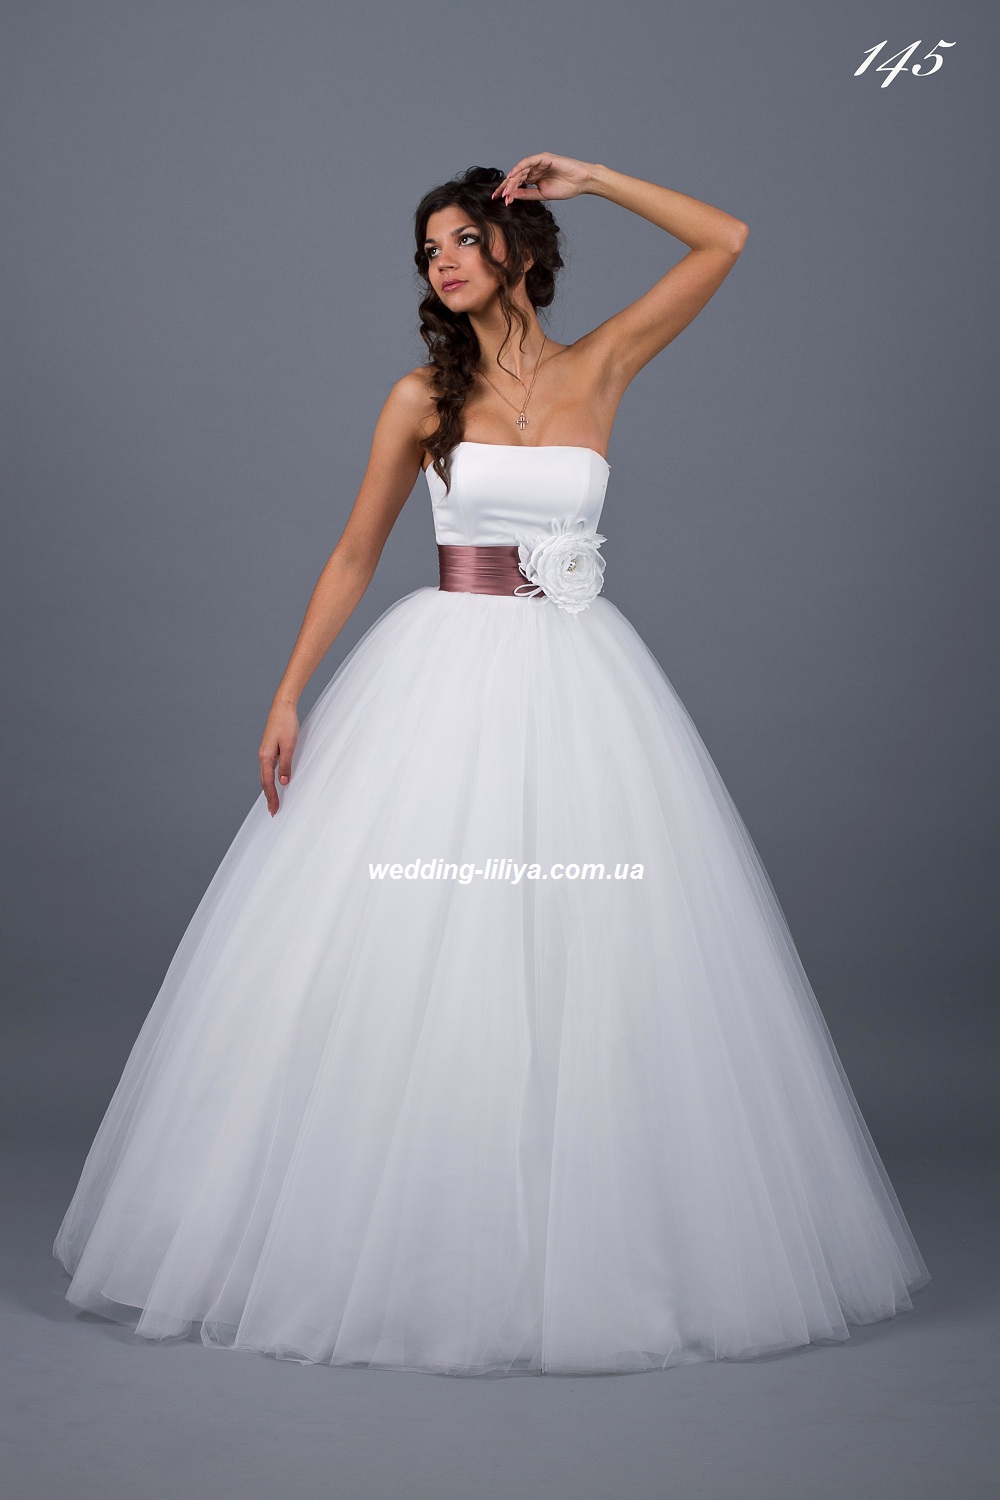 Свадебное платье №145